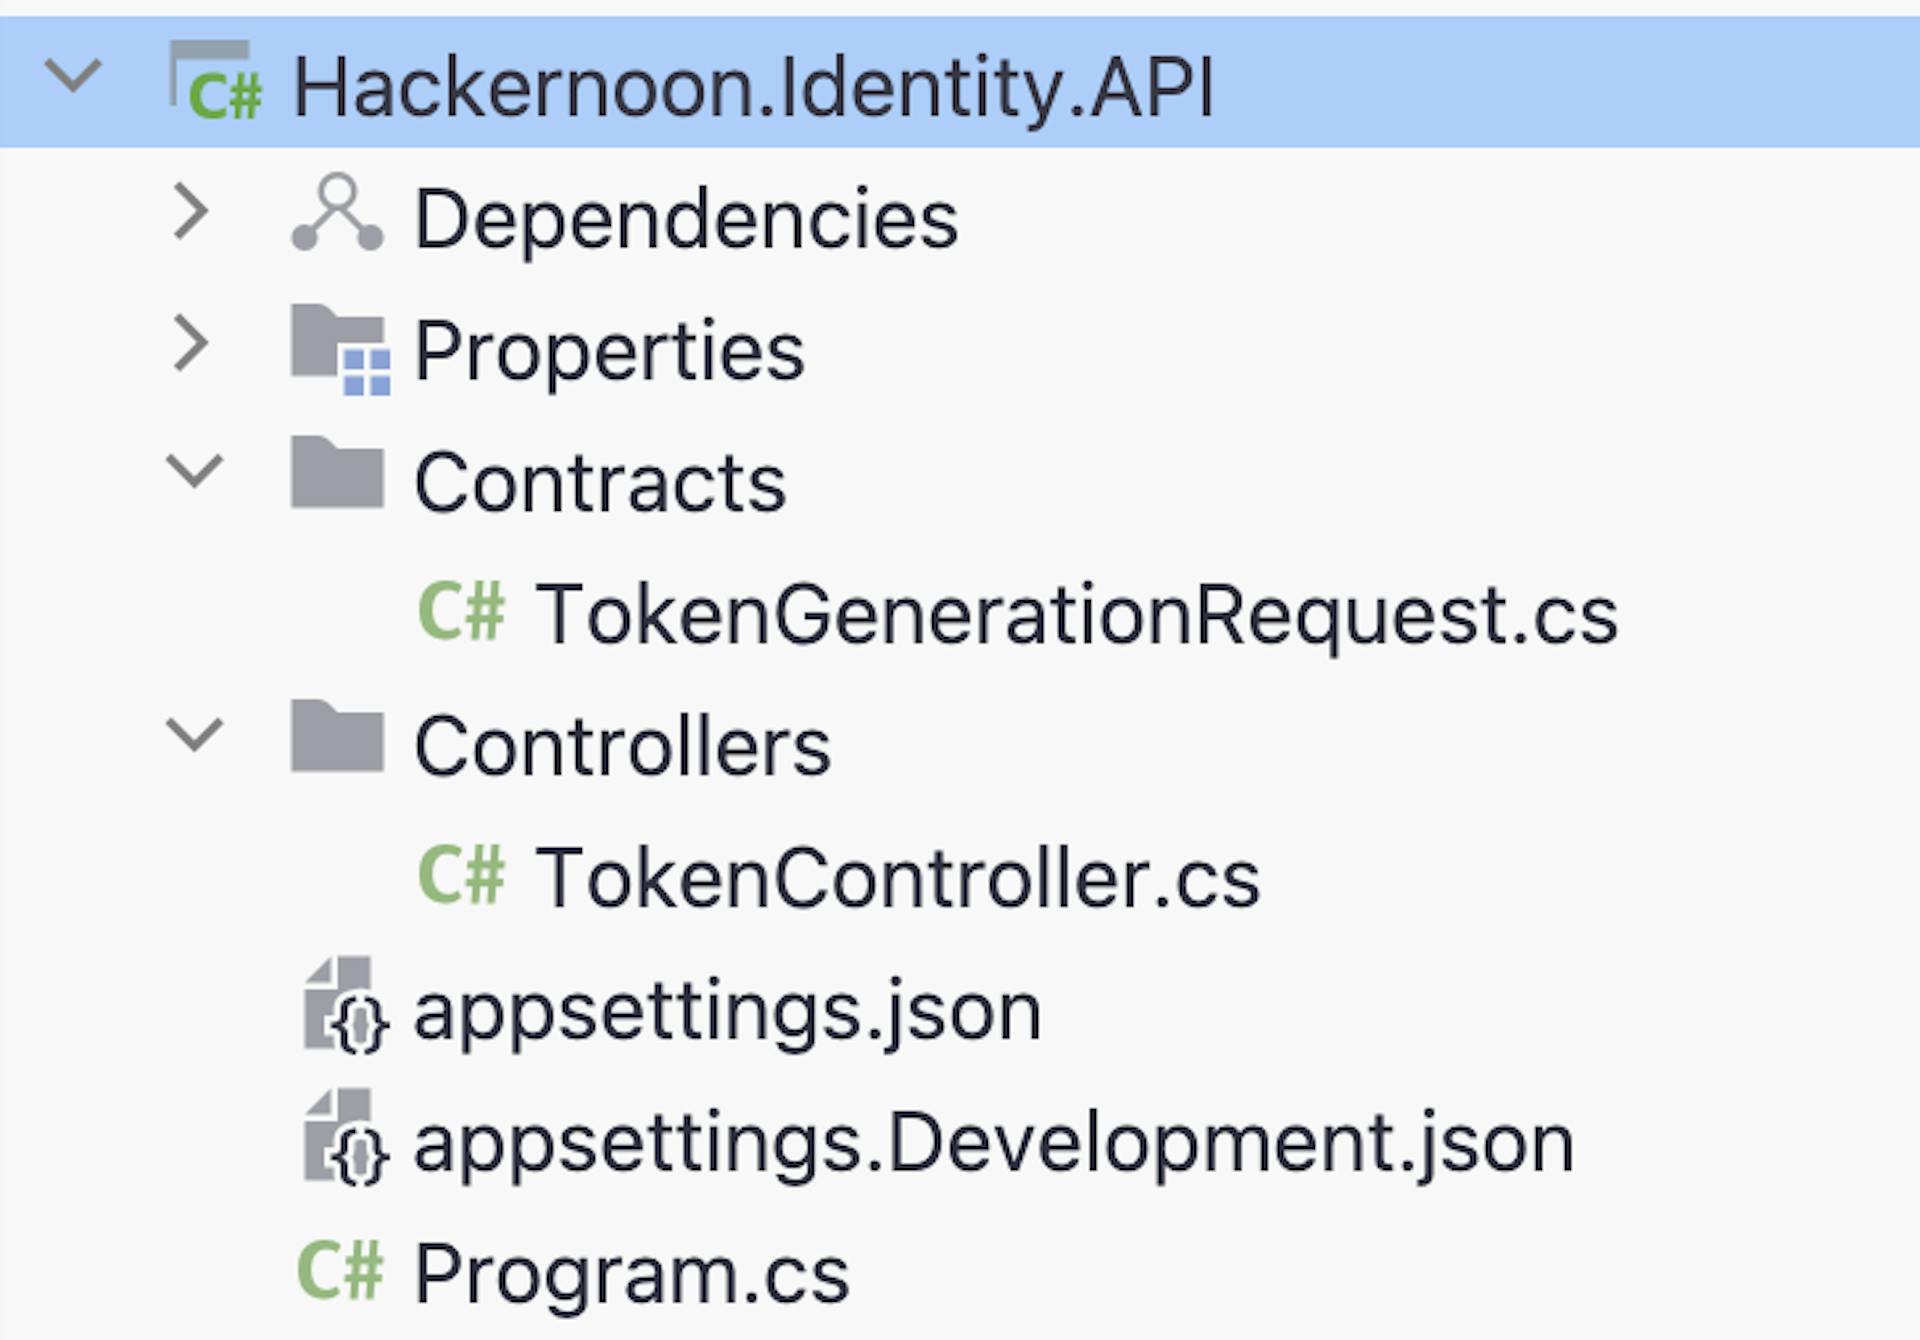 API de identidade – estrutura do projeto